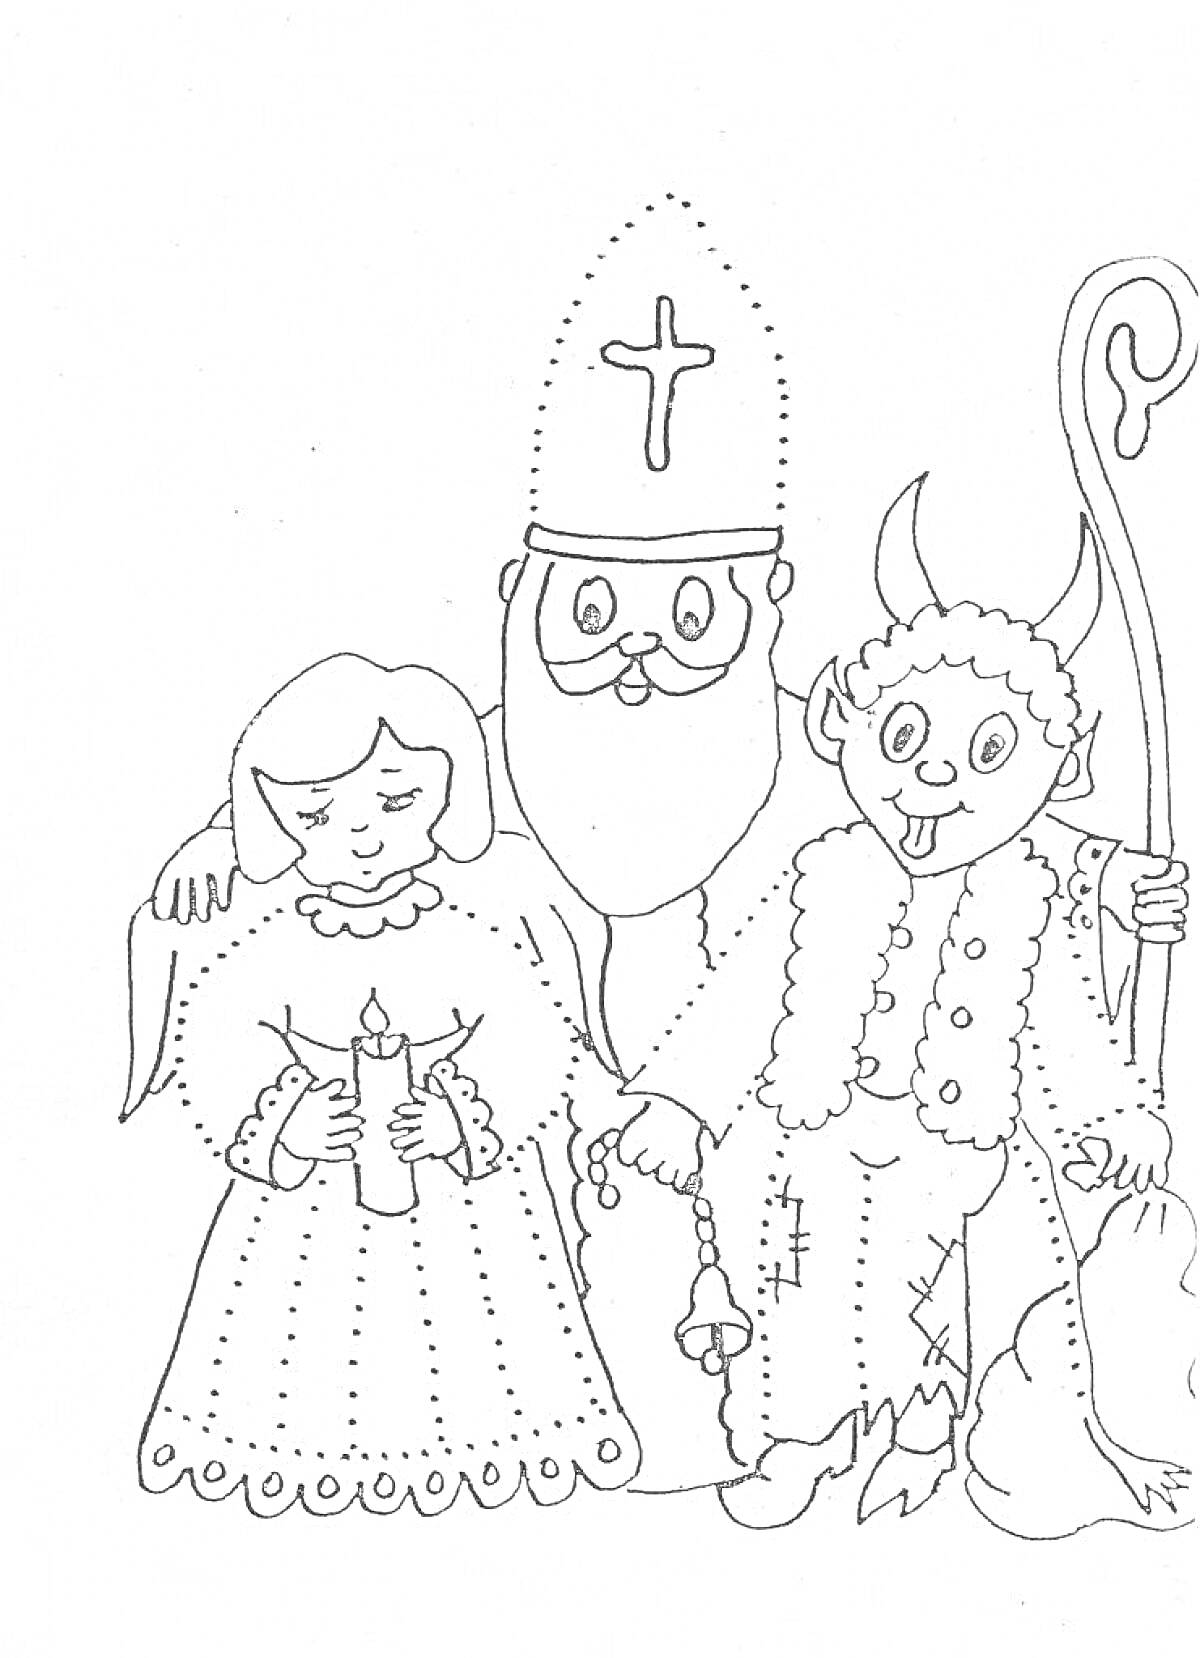 Девочка с свечой, святой Николай с митрой и крестом, черт с рогами и посохом